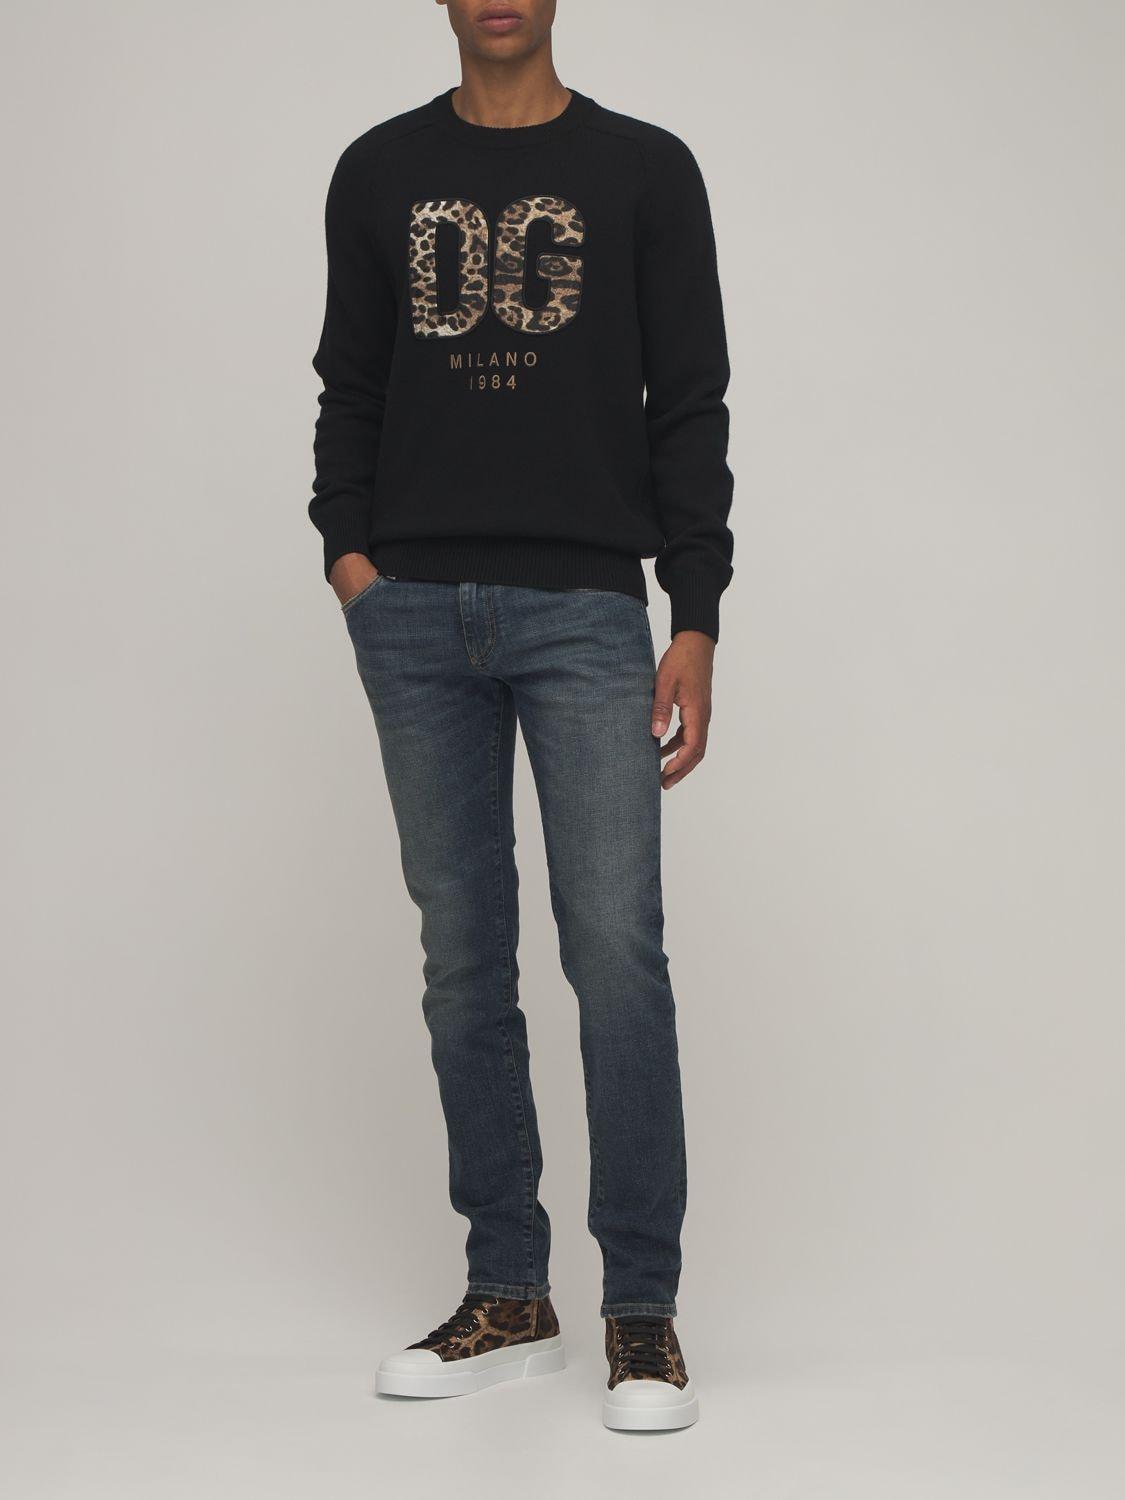 Dolce & Gabbana Men's Black Dg Leopard Logo Wool Knit Sweater